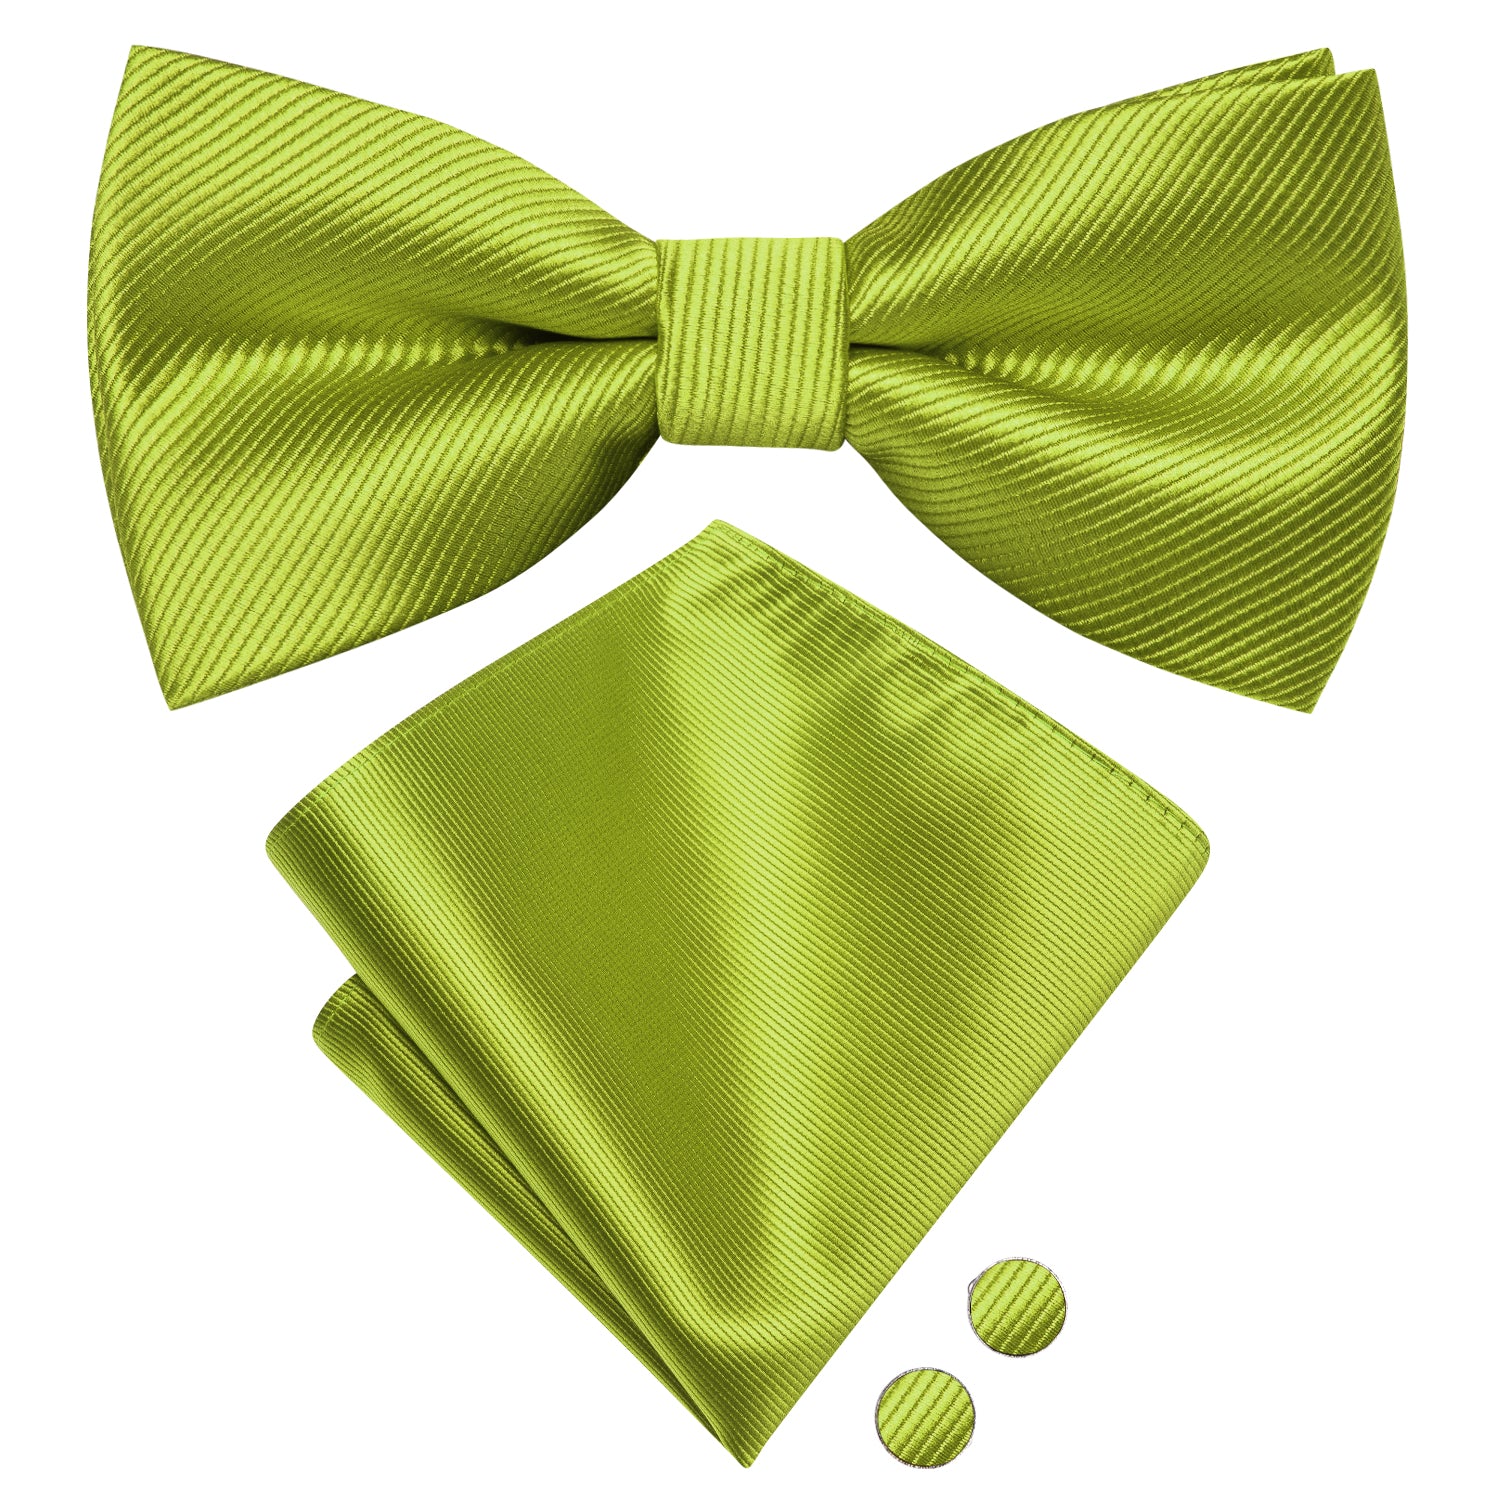 Leaf Green Striped Pre-tied Bow Tie Hanky Cufflinks Set